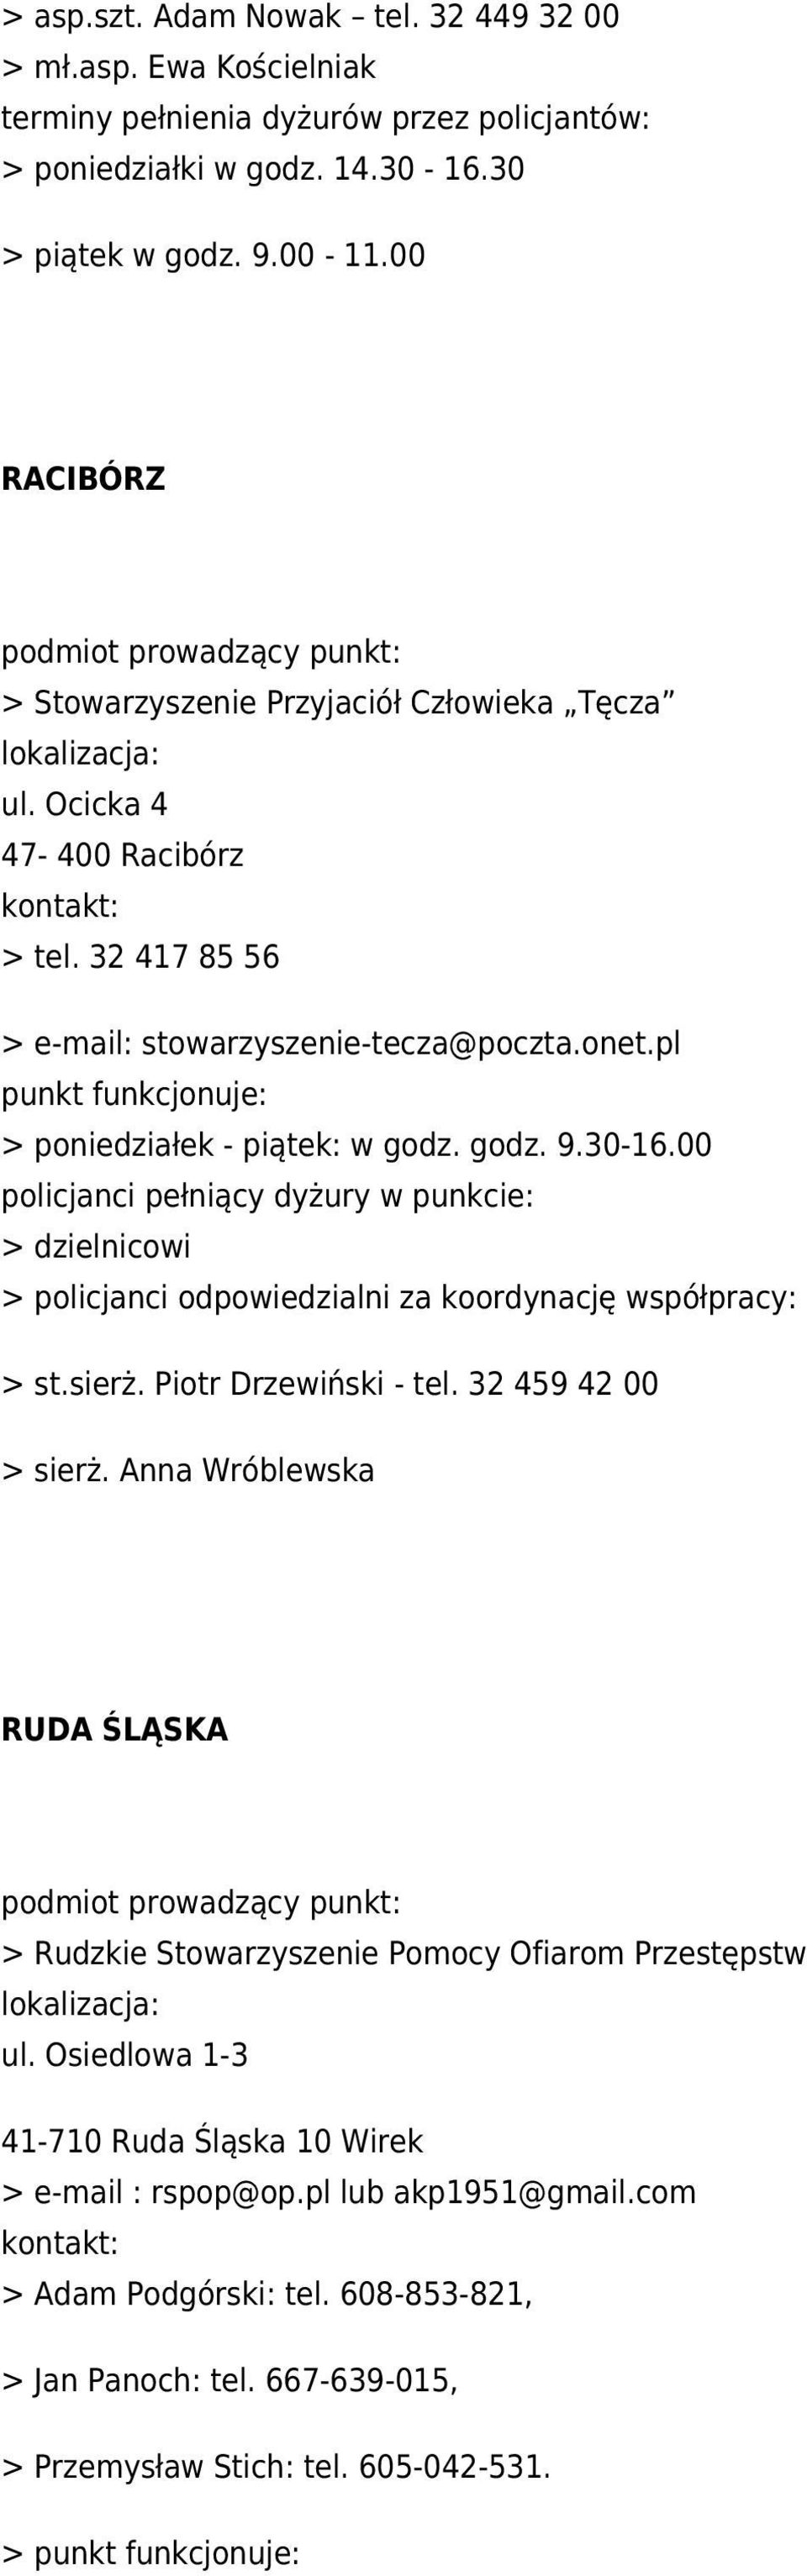 godz. 9.30-16.00 > dzielnicowi > policjanci odpowiedzialni za koordynację współpracy: > st.sierż. Piotr Drzewiński - tel. 32 459 42 00 > sierż.